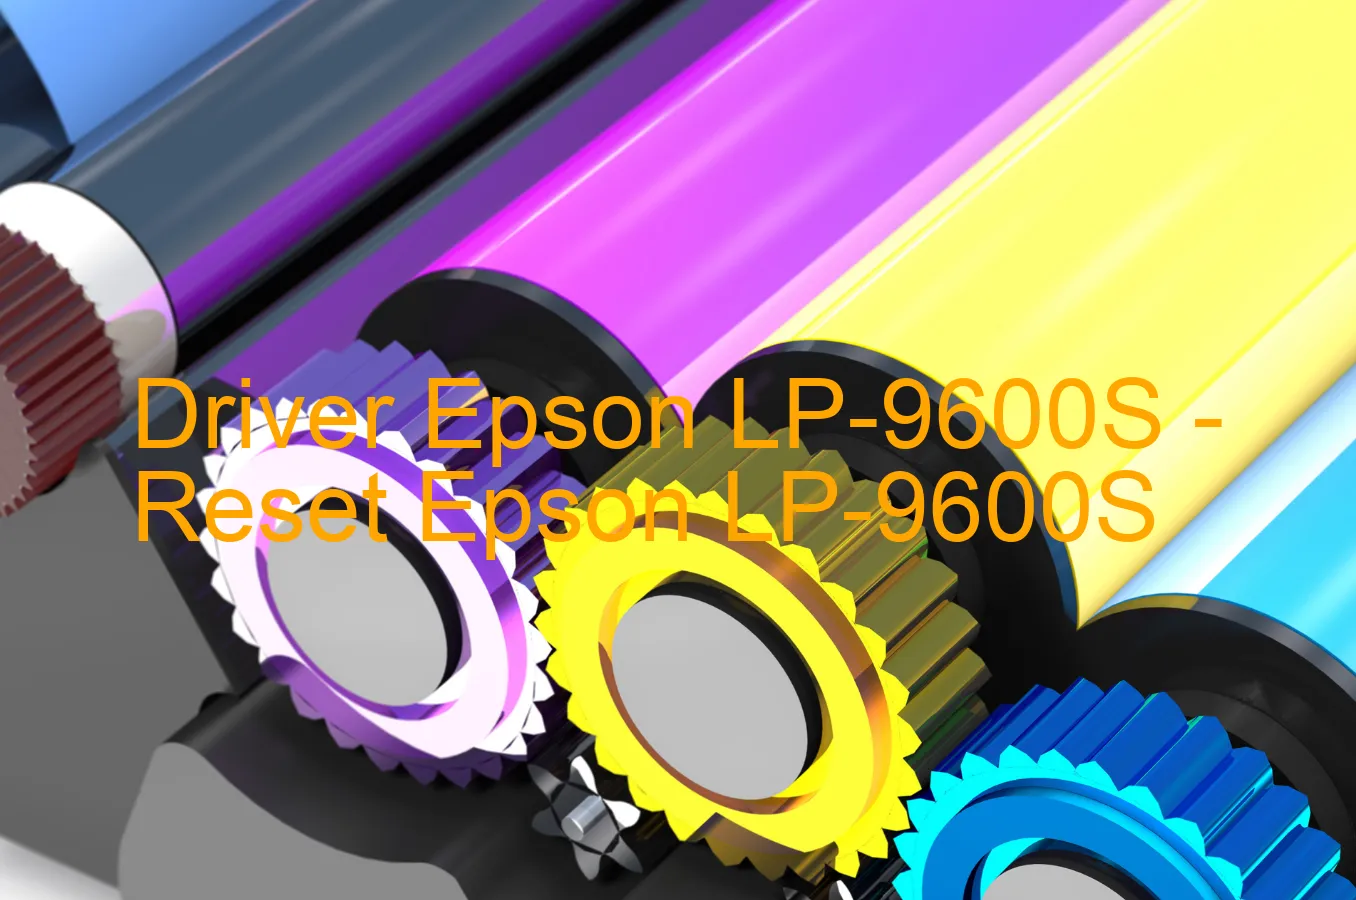 Epson LP-9600Sのドライバー、Epson LP-9600Sのリセットソフトウェア